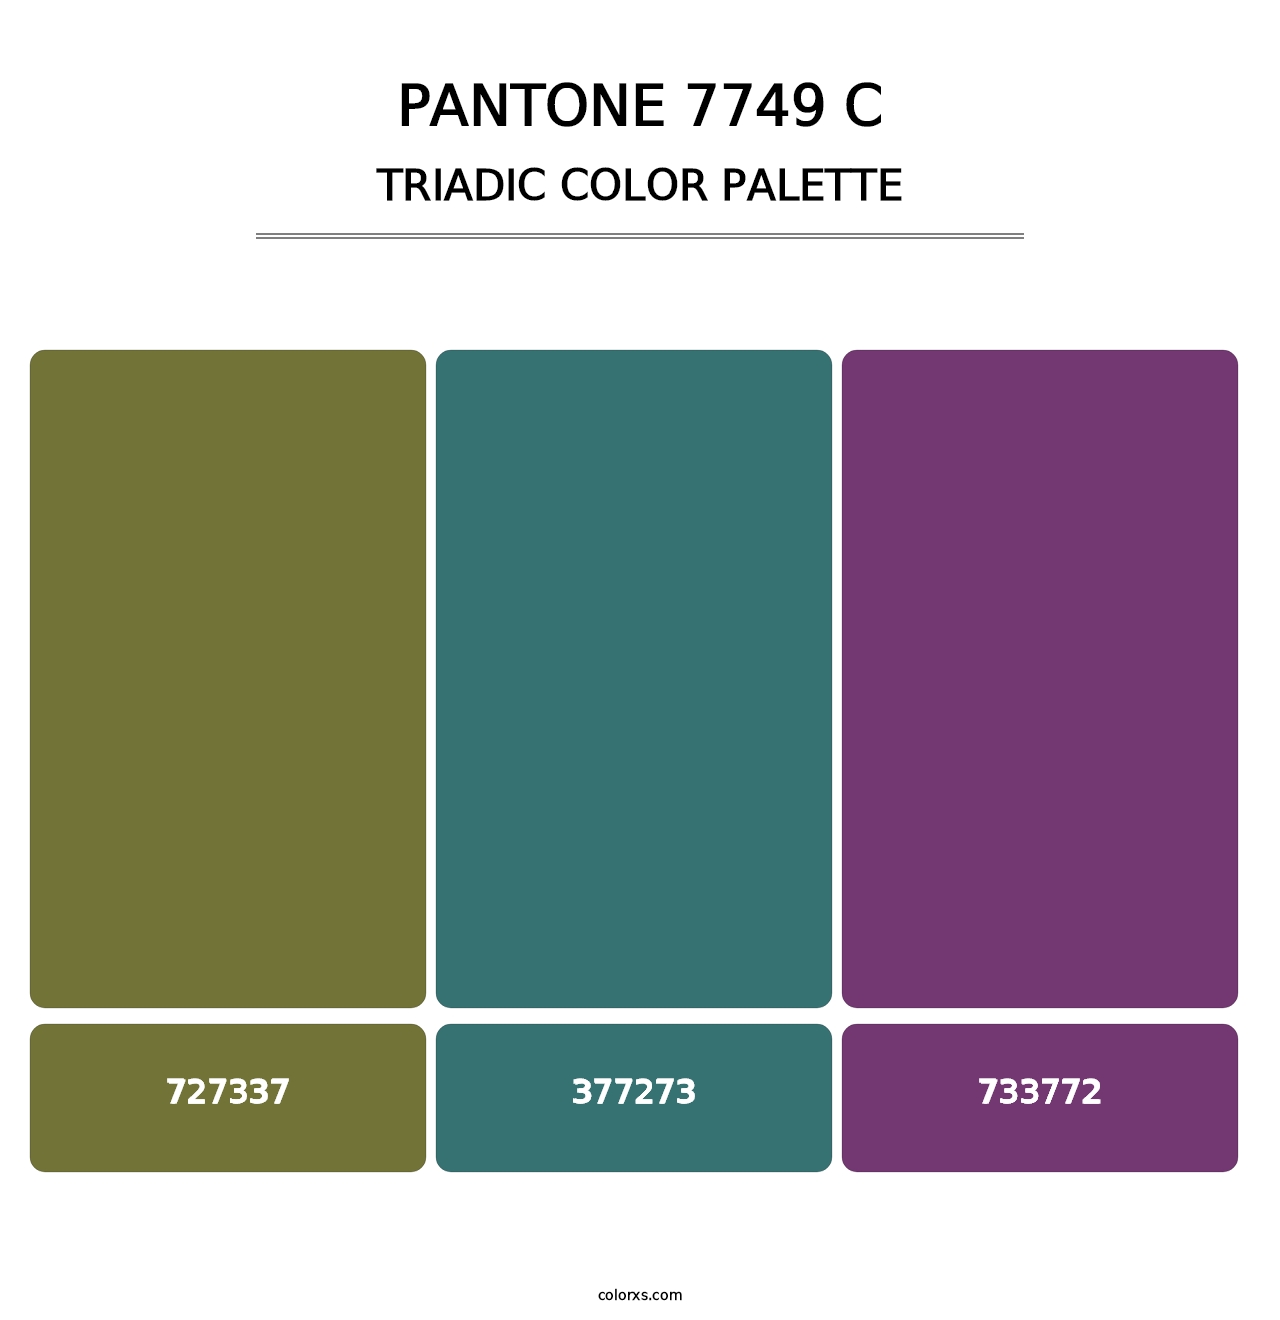 PANTONE 7749 C - Triadic Color Palette